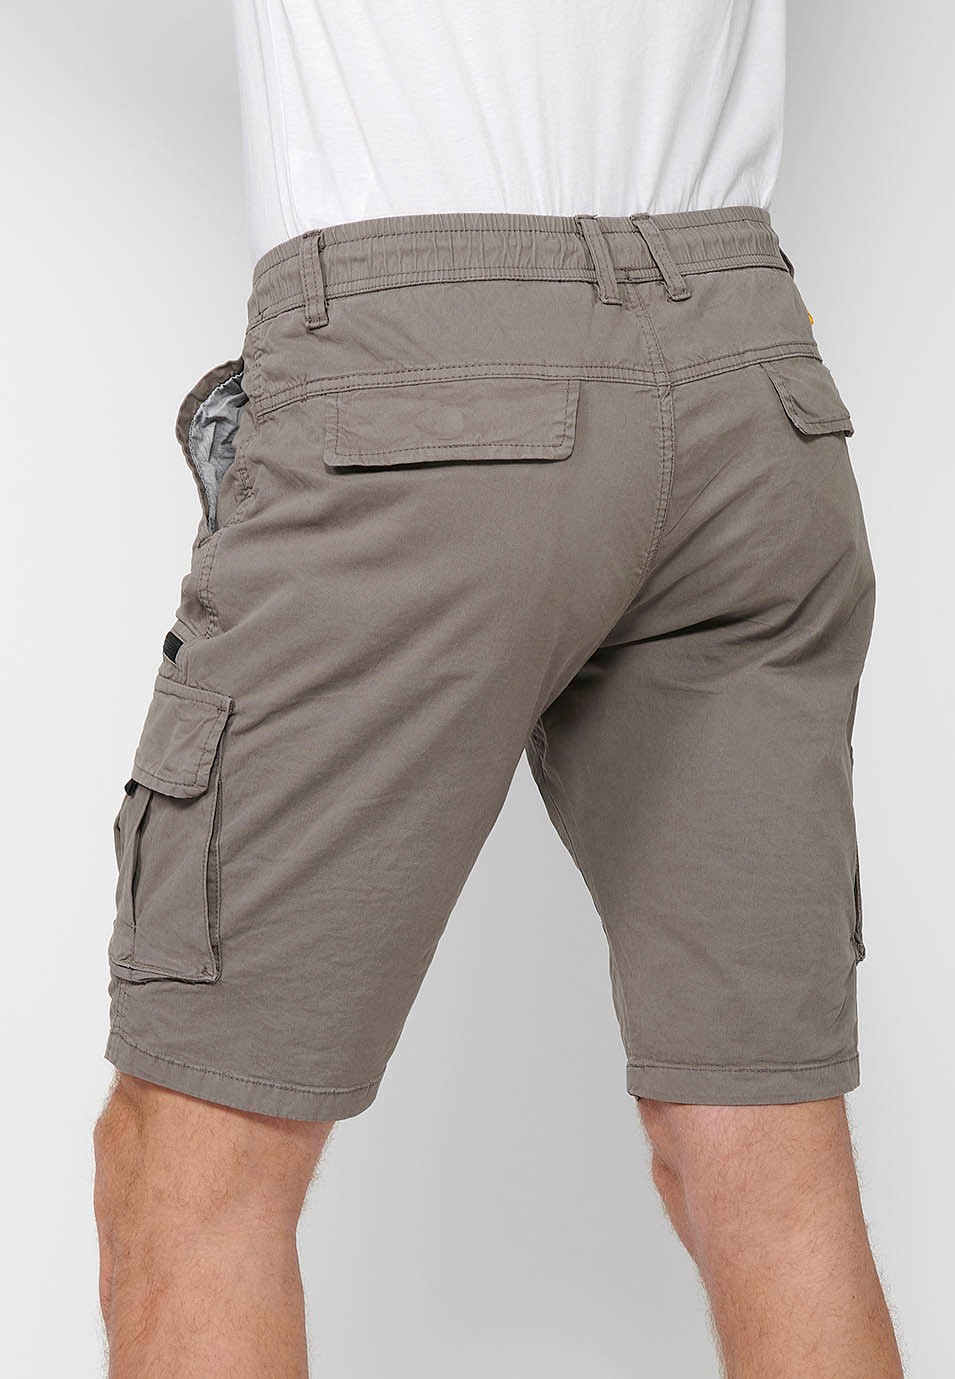 Cargo-Shorts mit Seitentaschen mit Klappe und Frontverschluss mit Reißverschluss und Knopf in Taupe-Farbe für Herren 8